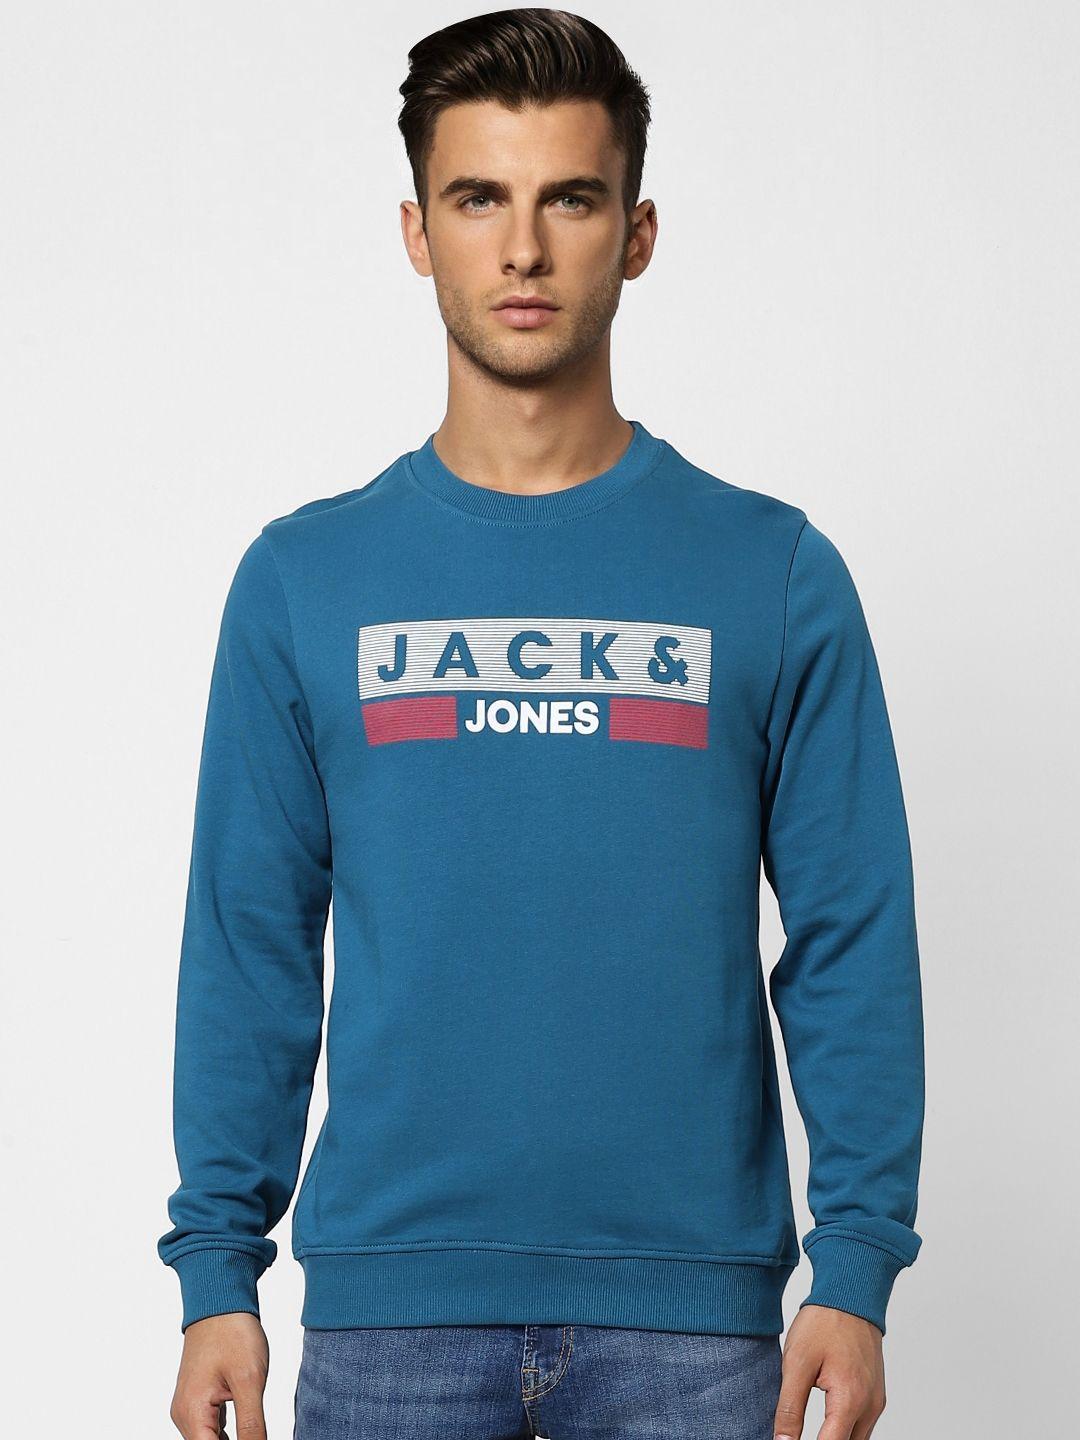 jack & jones men teal blue printed sweatshirt